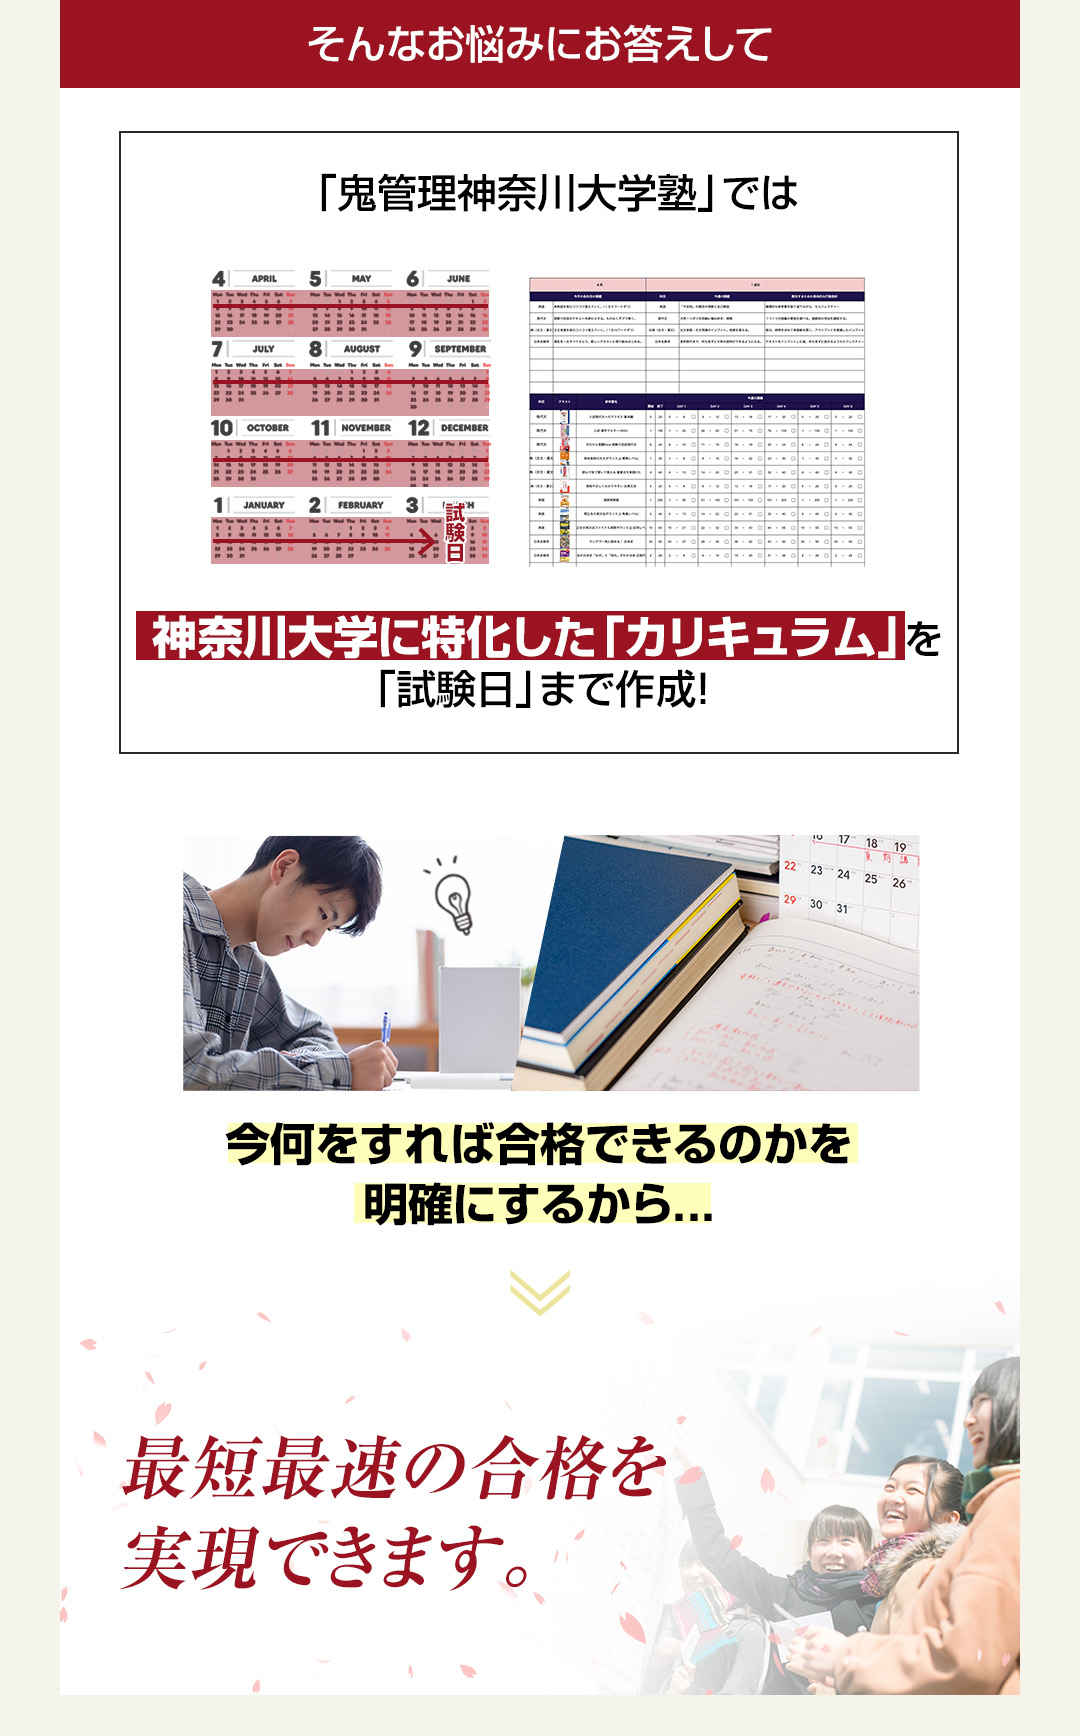 「鬼管理神奈川大学塾」では神奈川大学に特化した「カリキュラム」を「試験日」まで作成